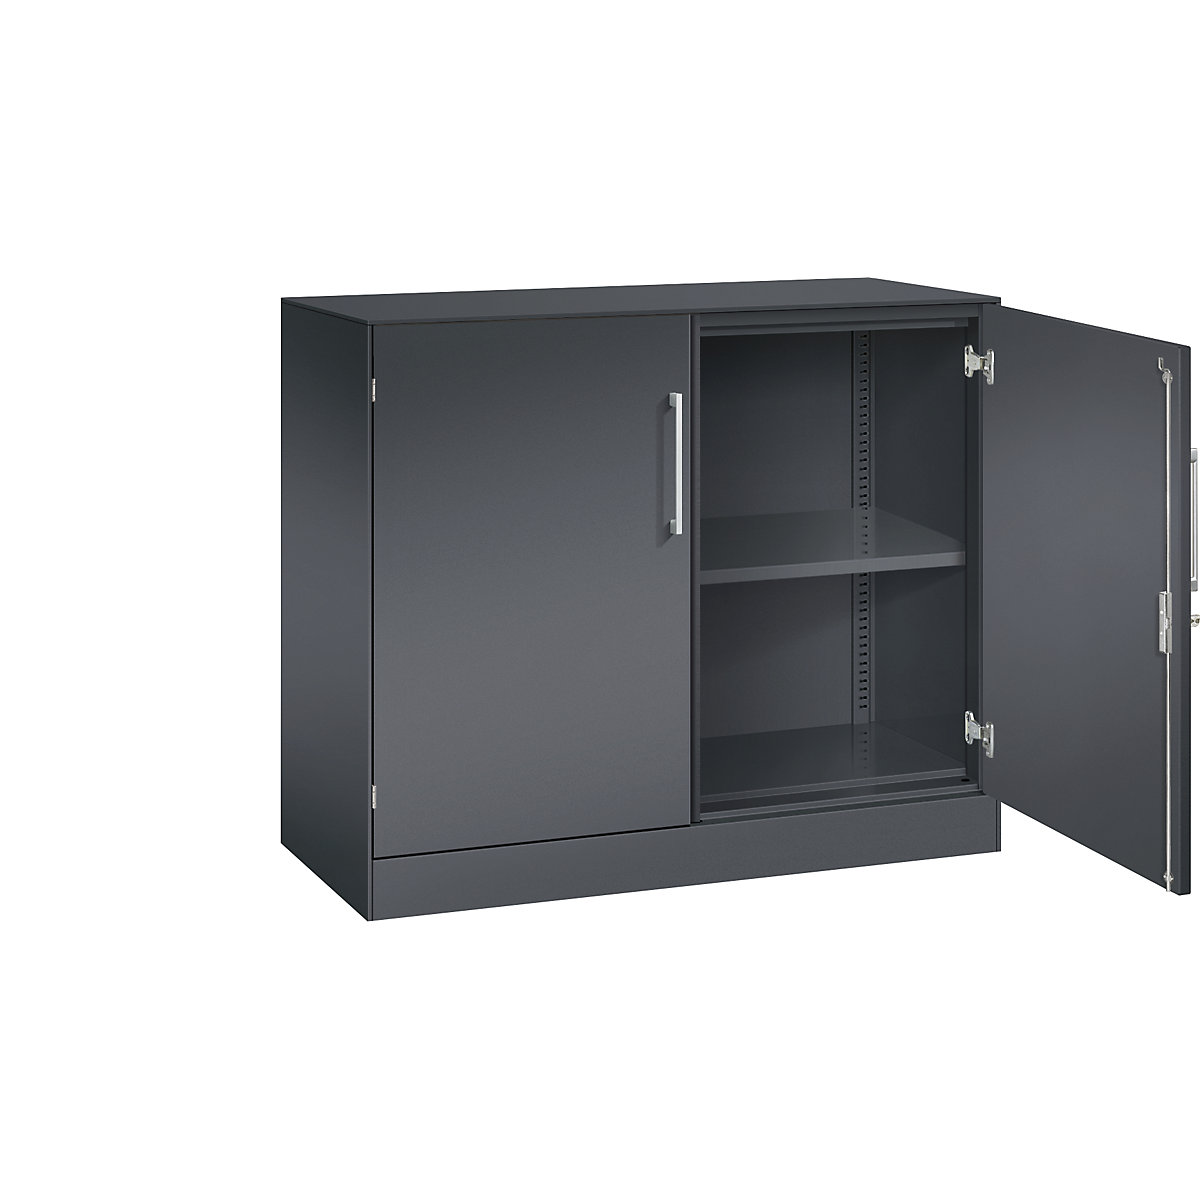 ASISTO double door cupboard, height 897 mm – C+P, width 1000 mm, 1 shelf, black grey/black grey-8